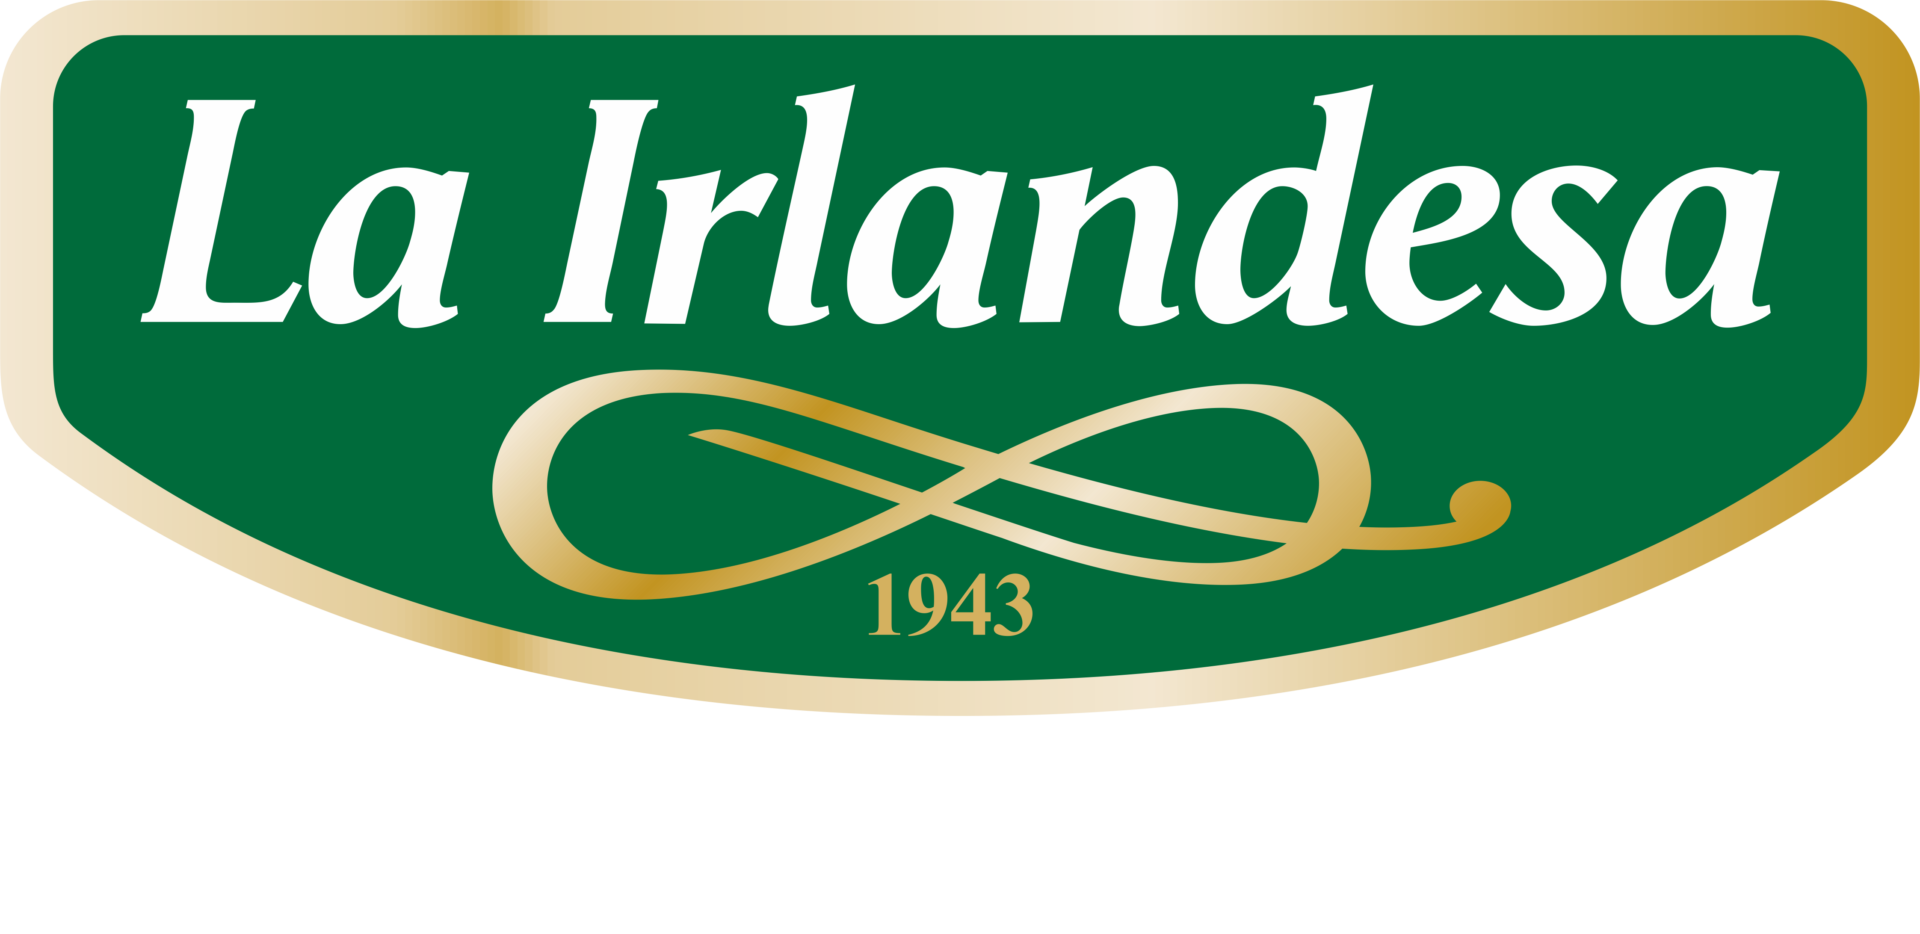 Logo-La-Irlandesa-Creando-Pasiones-BLANCO